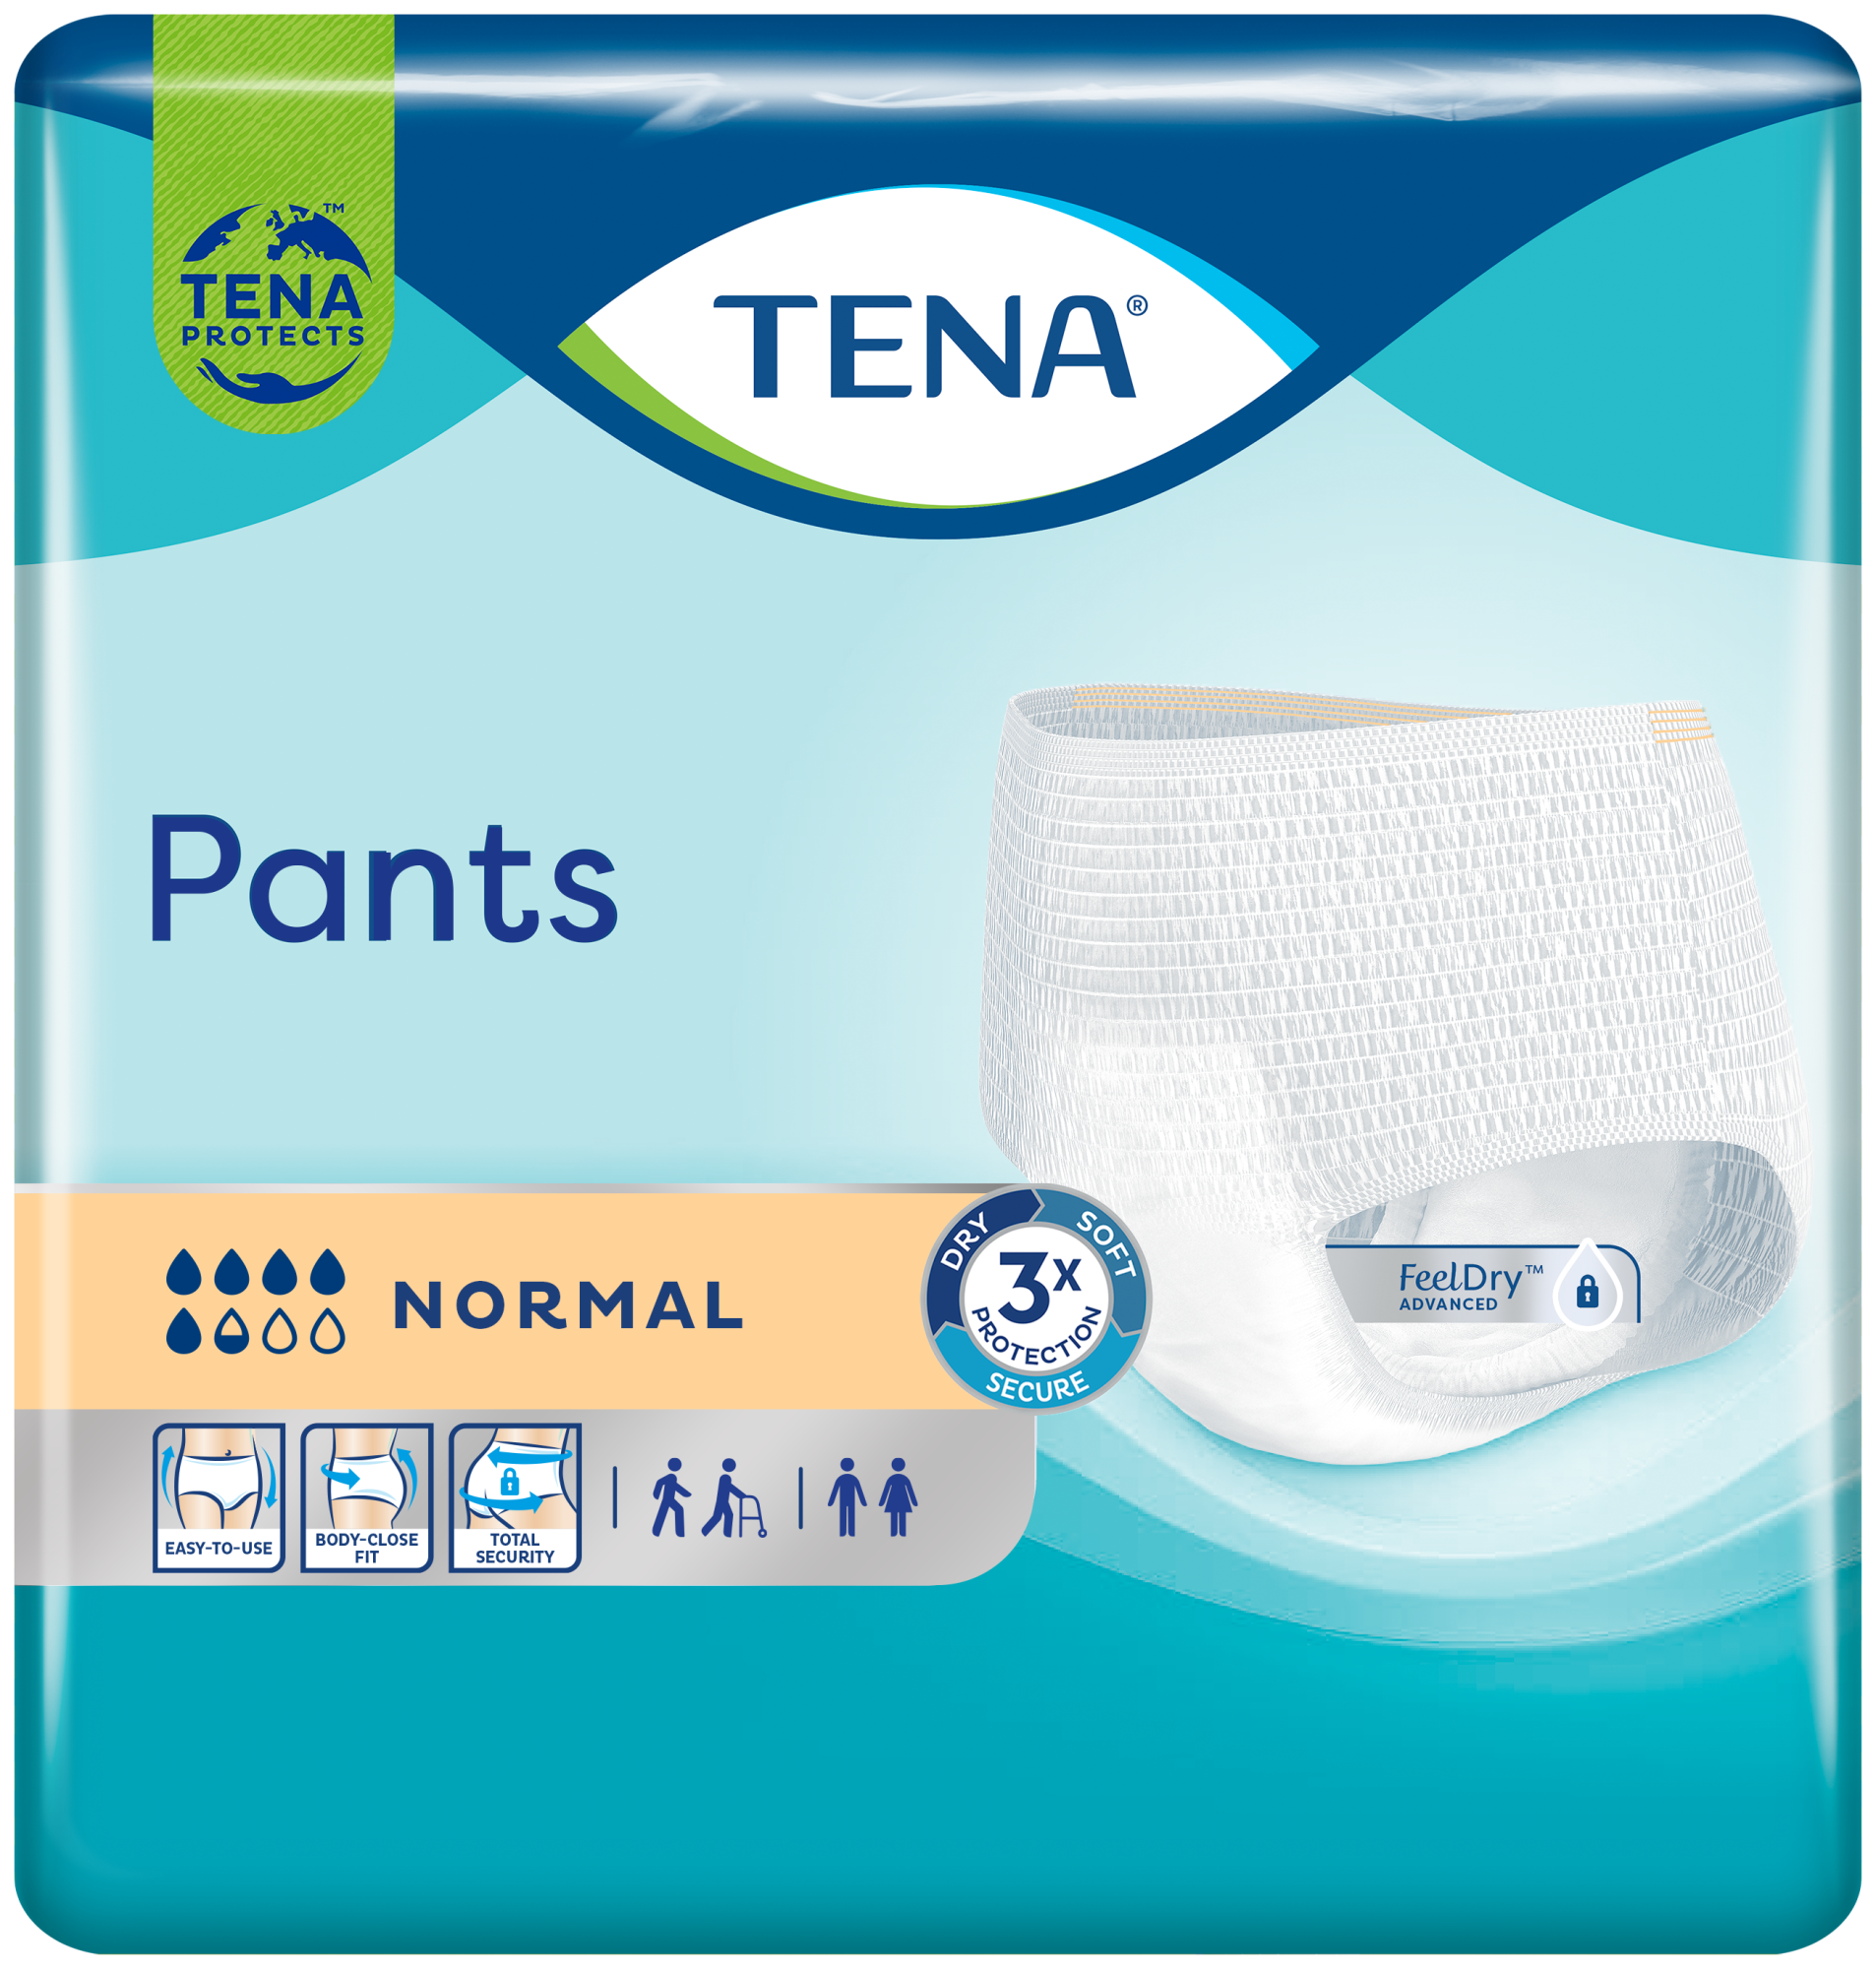 Подгузники-трусы TENA Pants Normal подходят для женщин и мужчин, их легко надеть благодаря мягким эластичным резиночкам